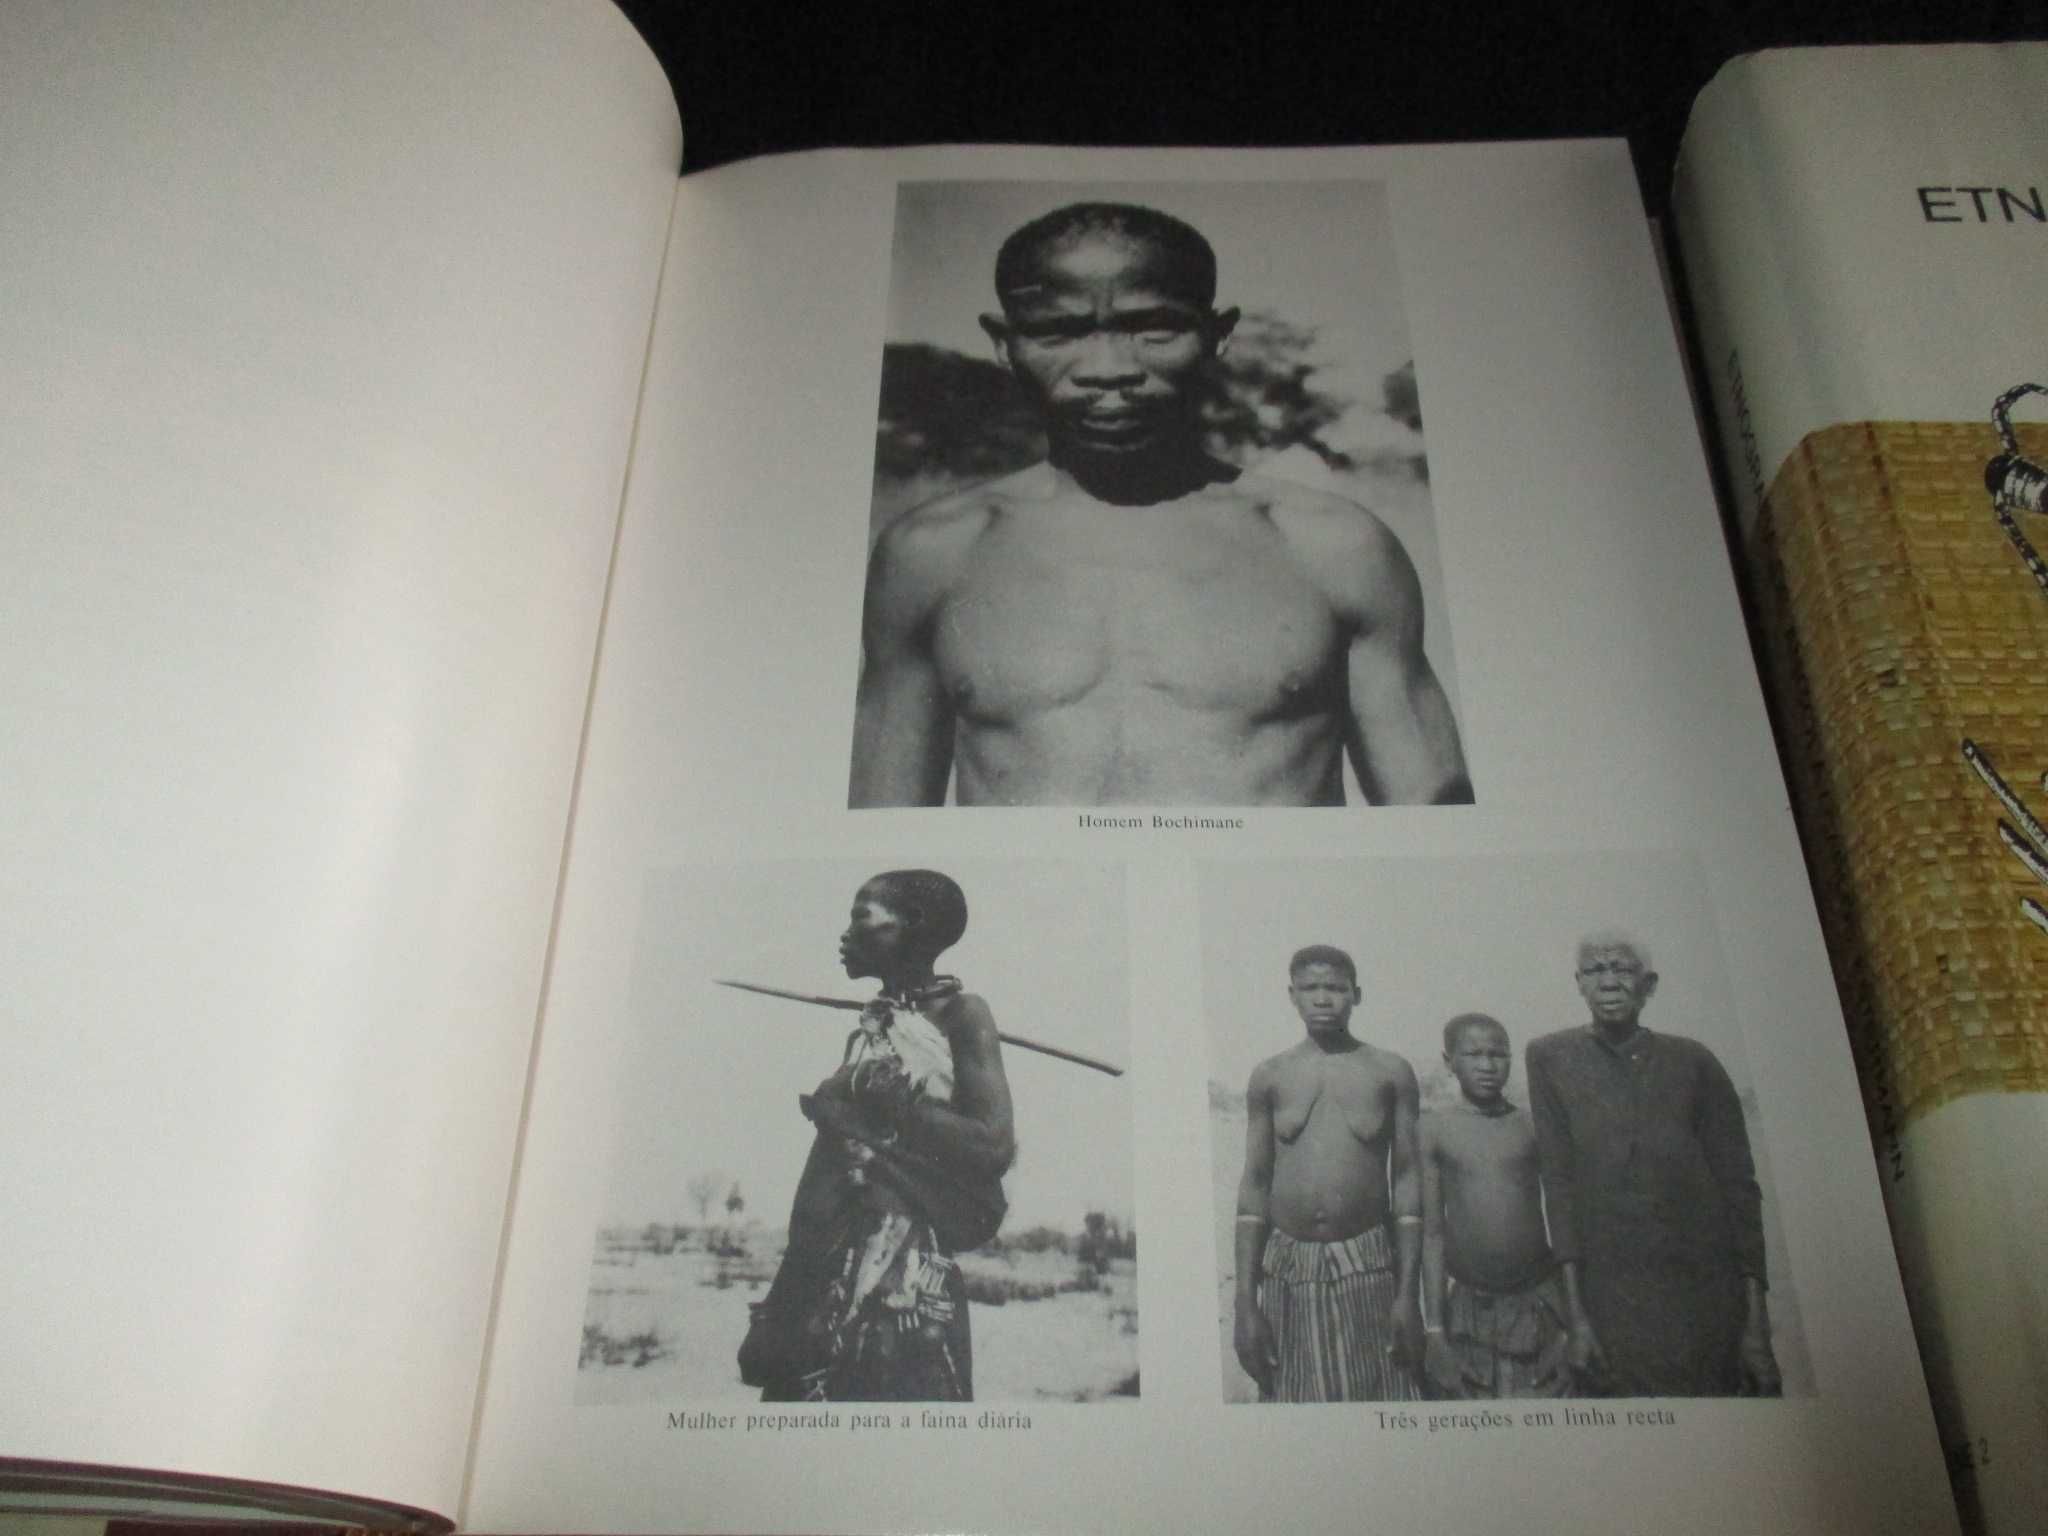 Livros Etnografia de Angola Sudoeste e Centro 1983